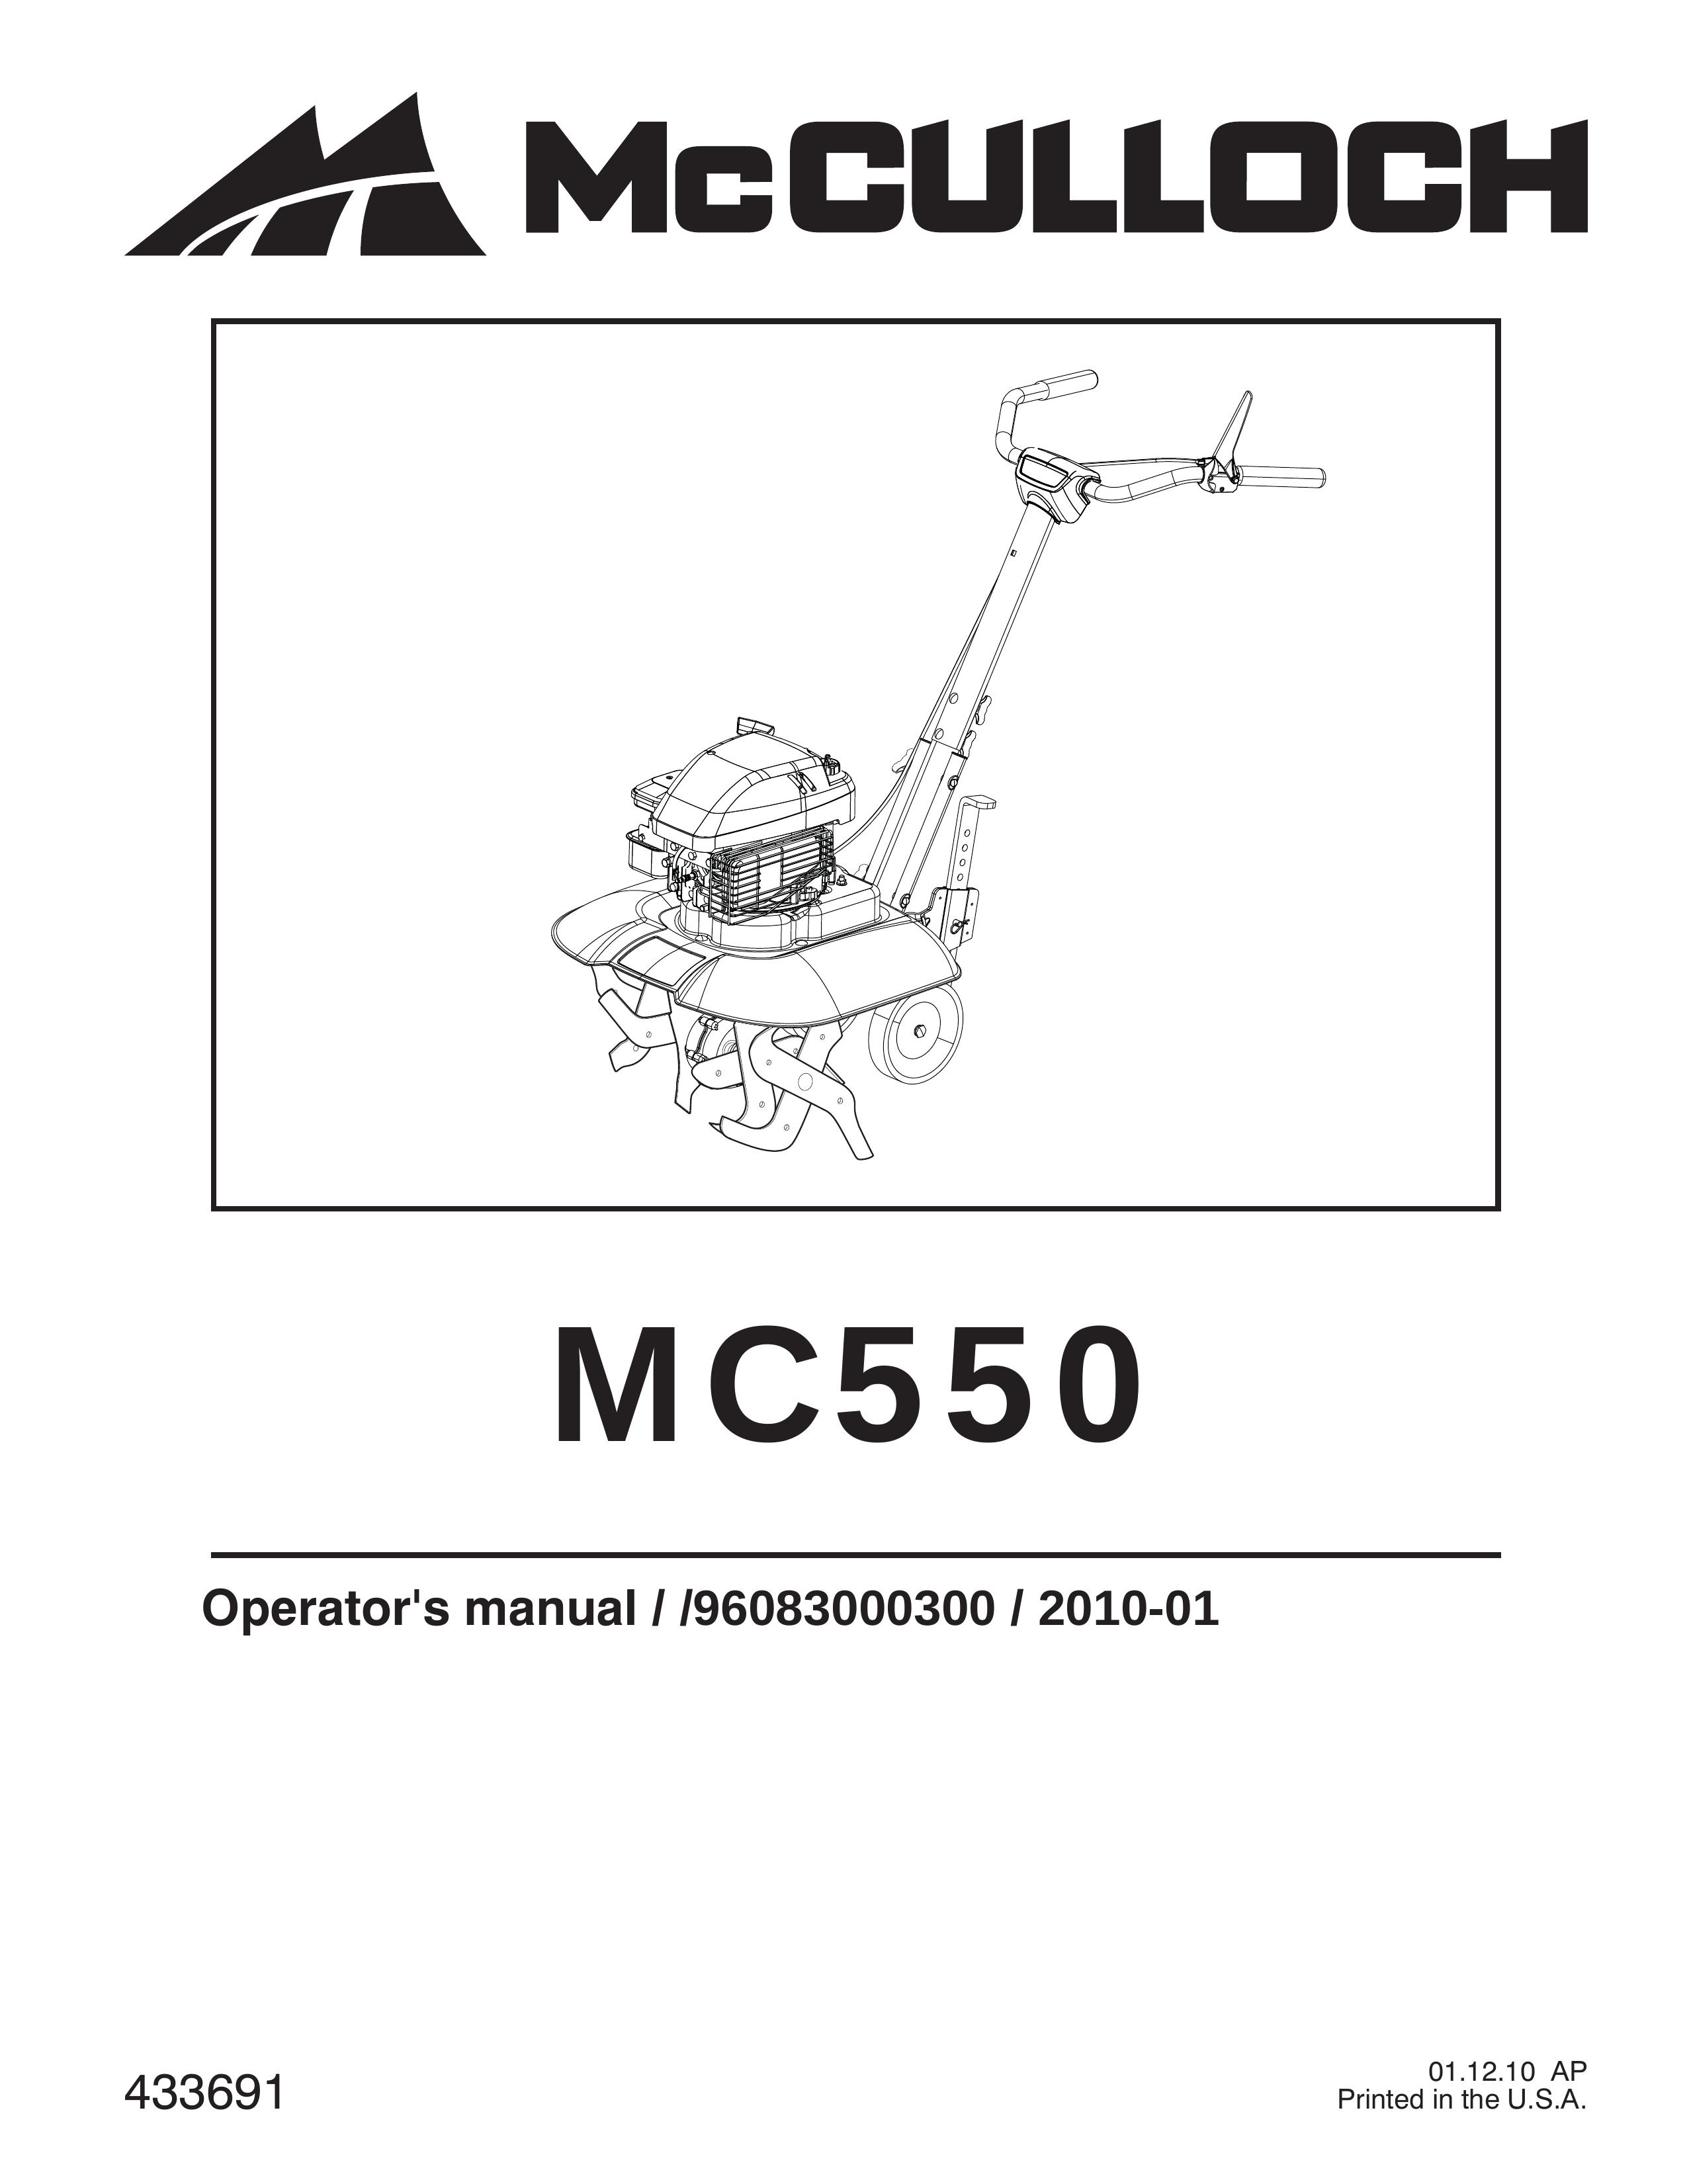 McCulloch MC550 Cultivator User Manual